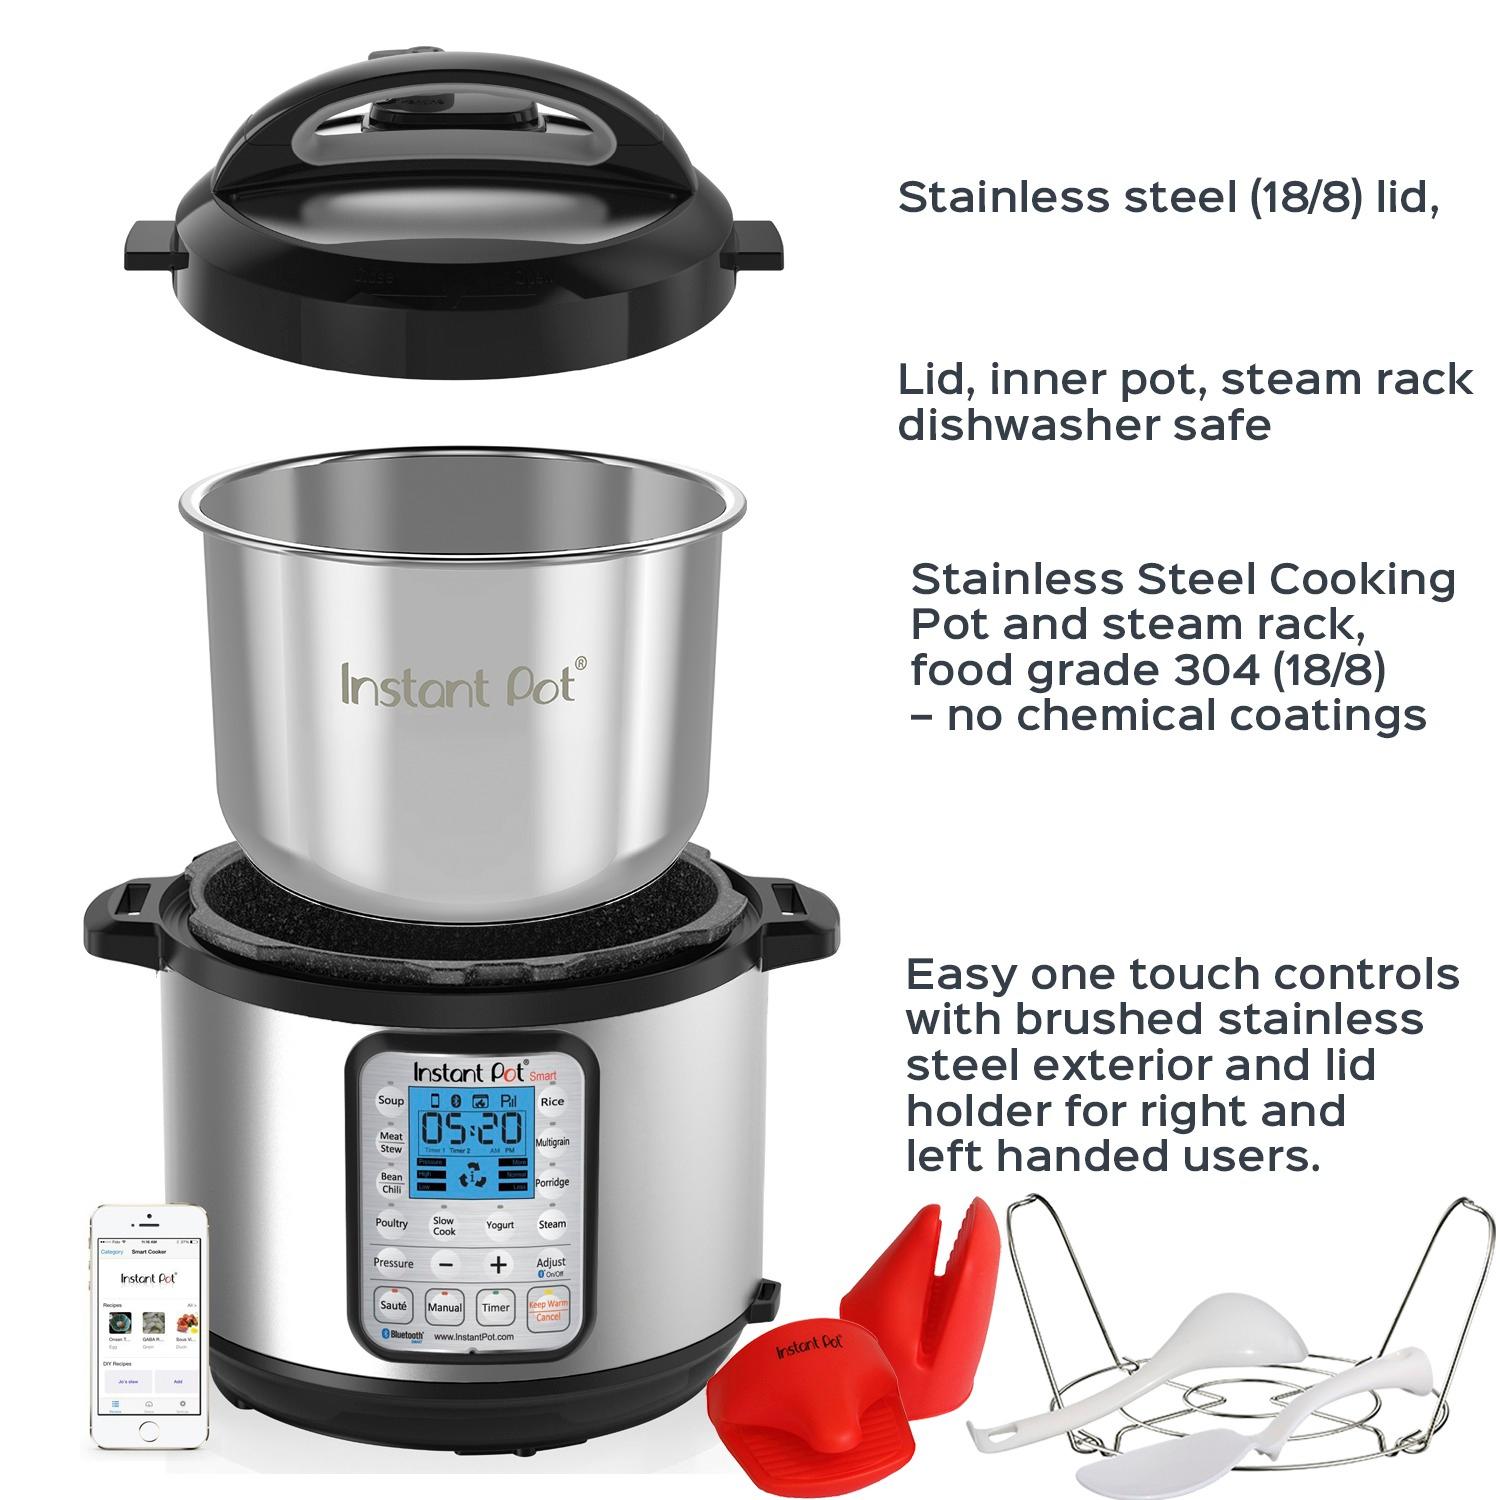 Crock-Pot Smart Pot 6 Quart Slow Cooker, Brushed Stainless Steel